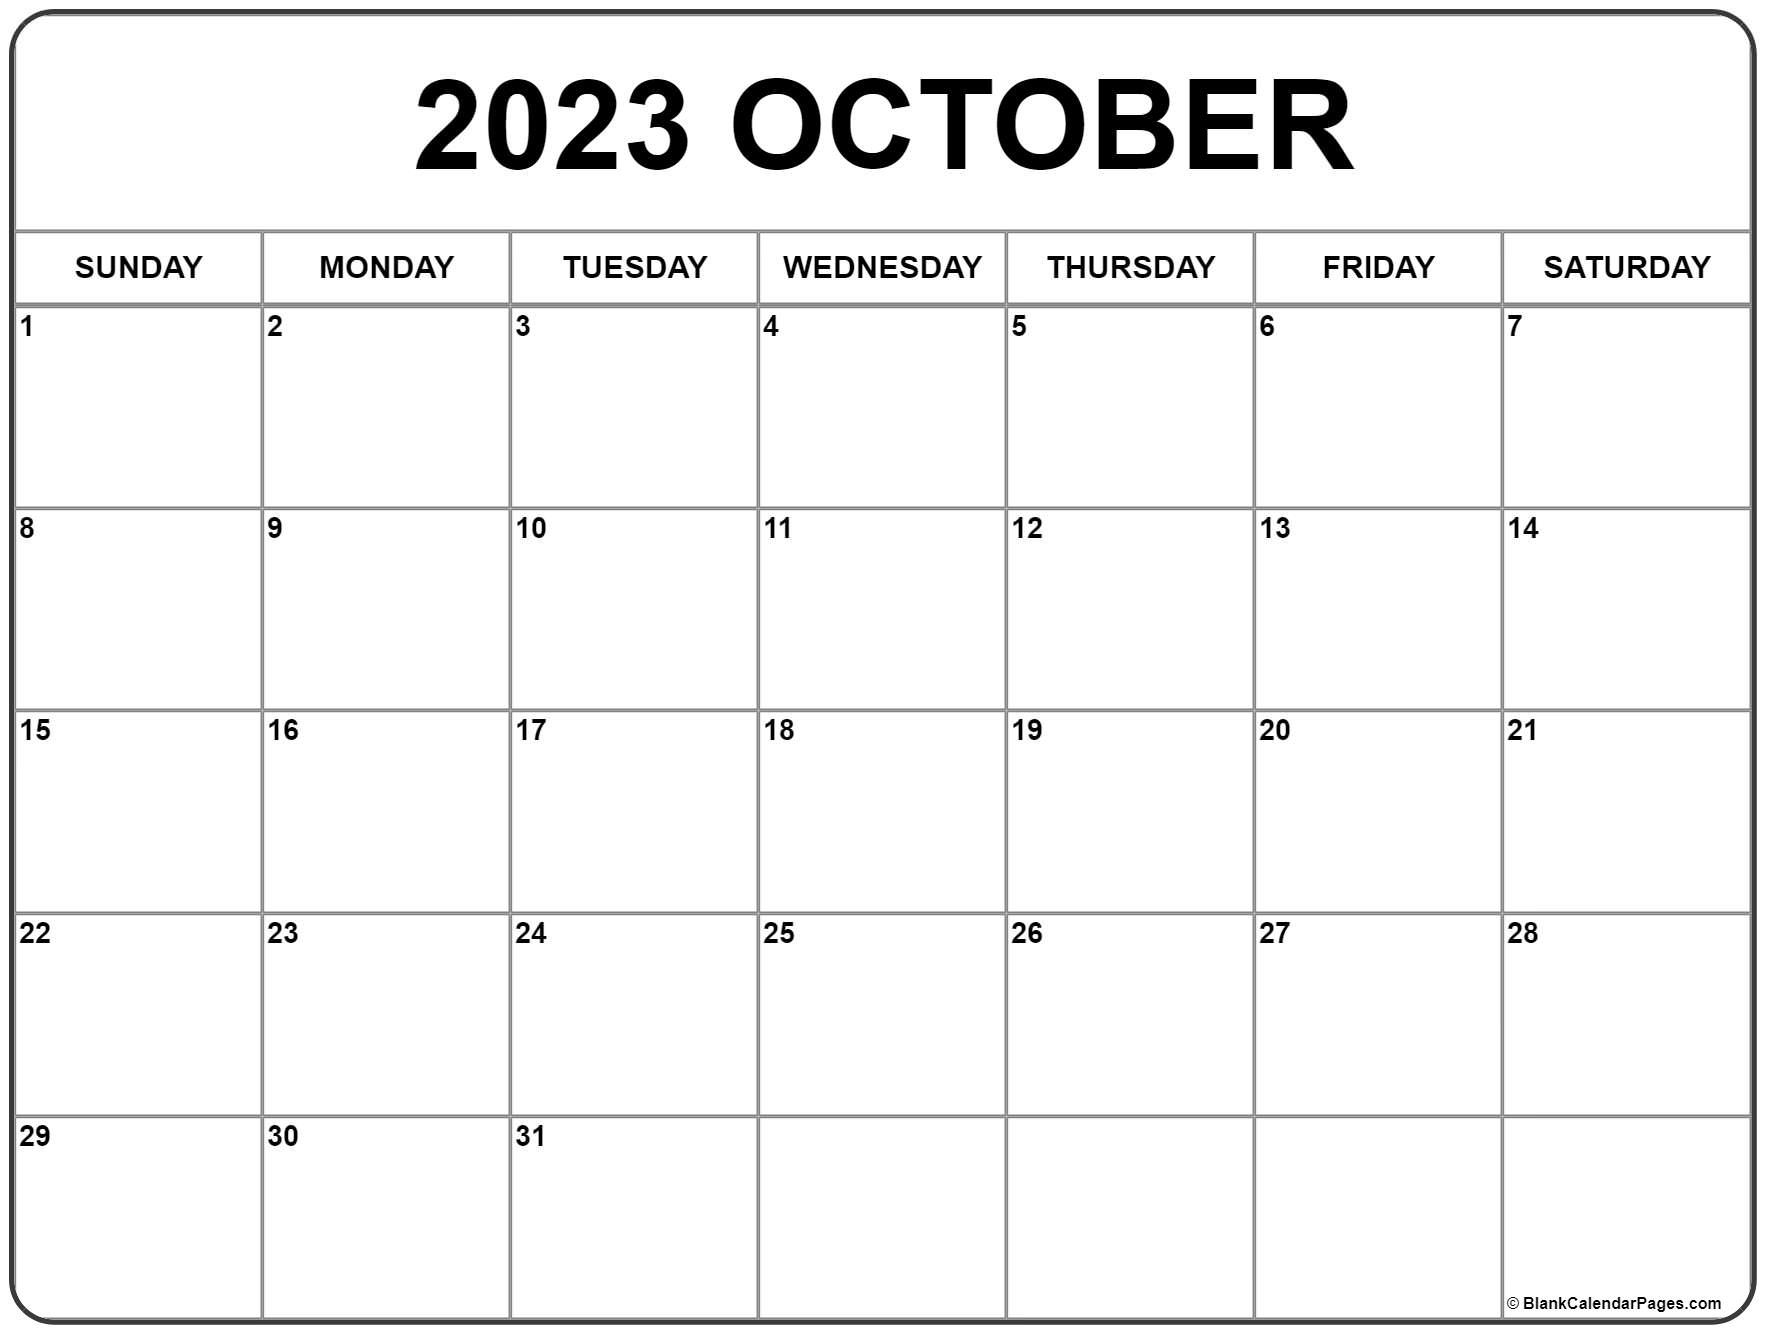 october-2023-calendar-free-printable-calendar